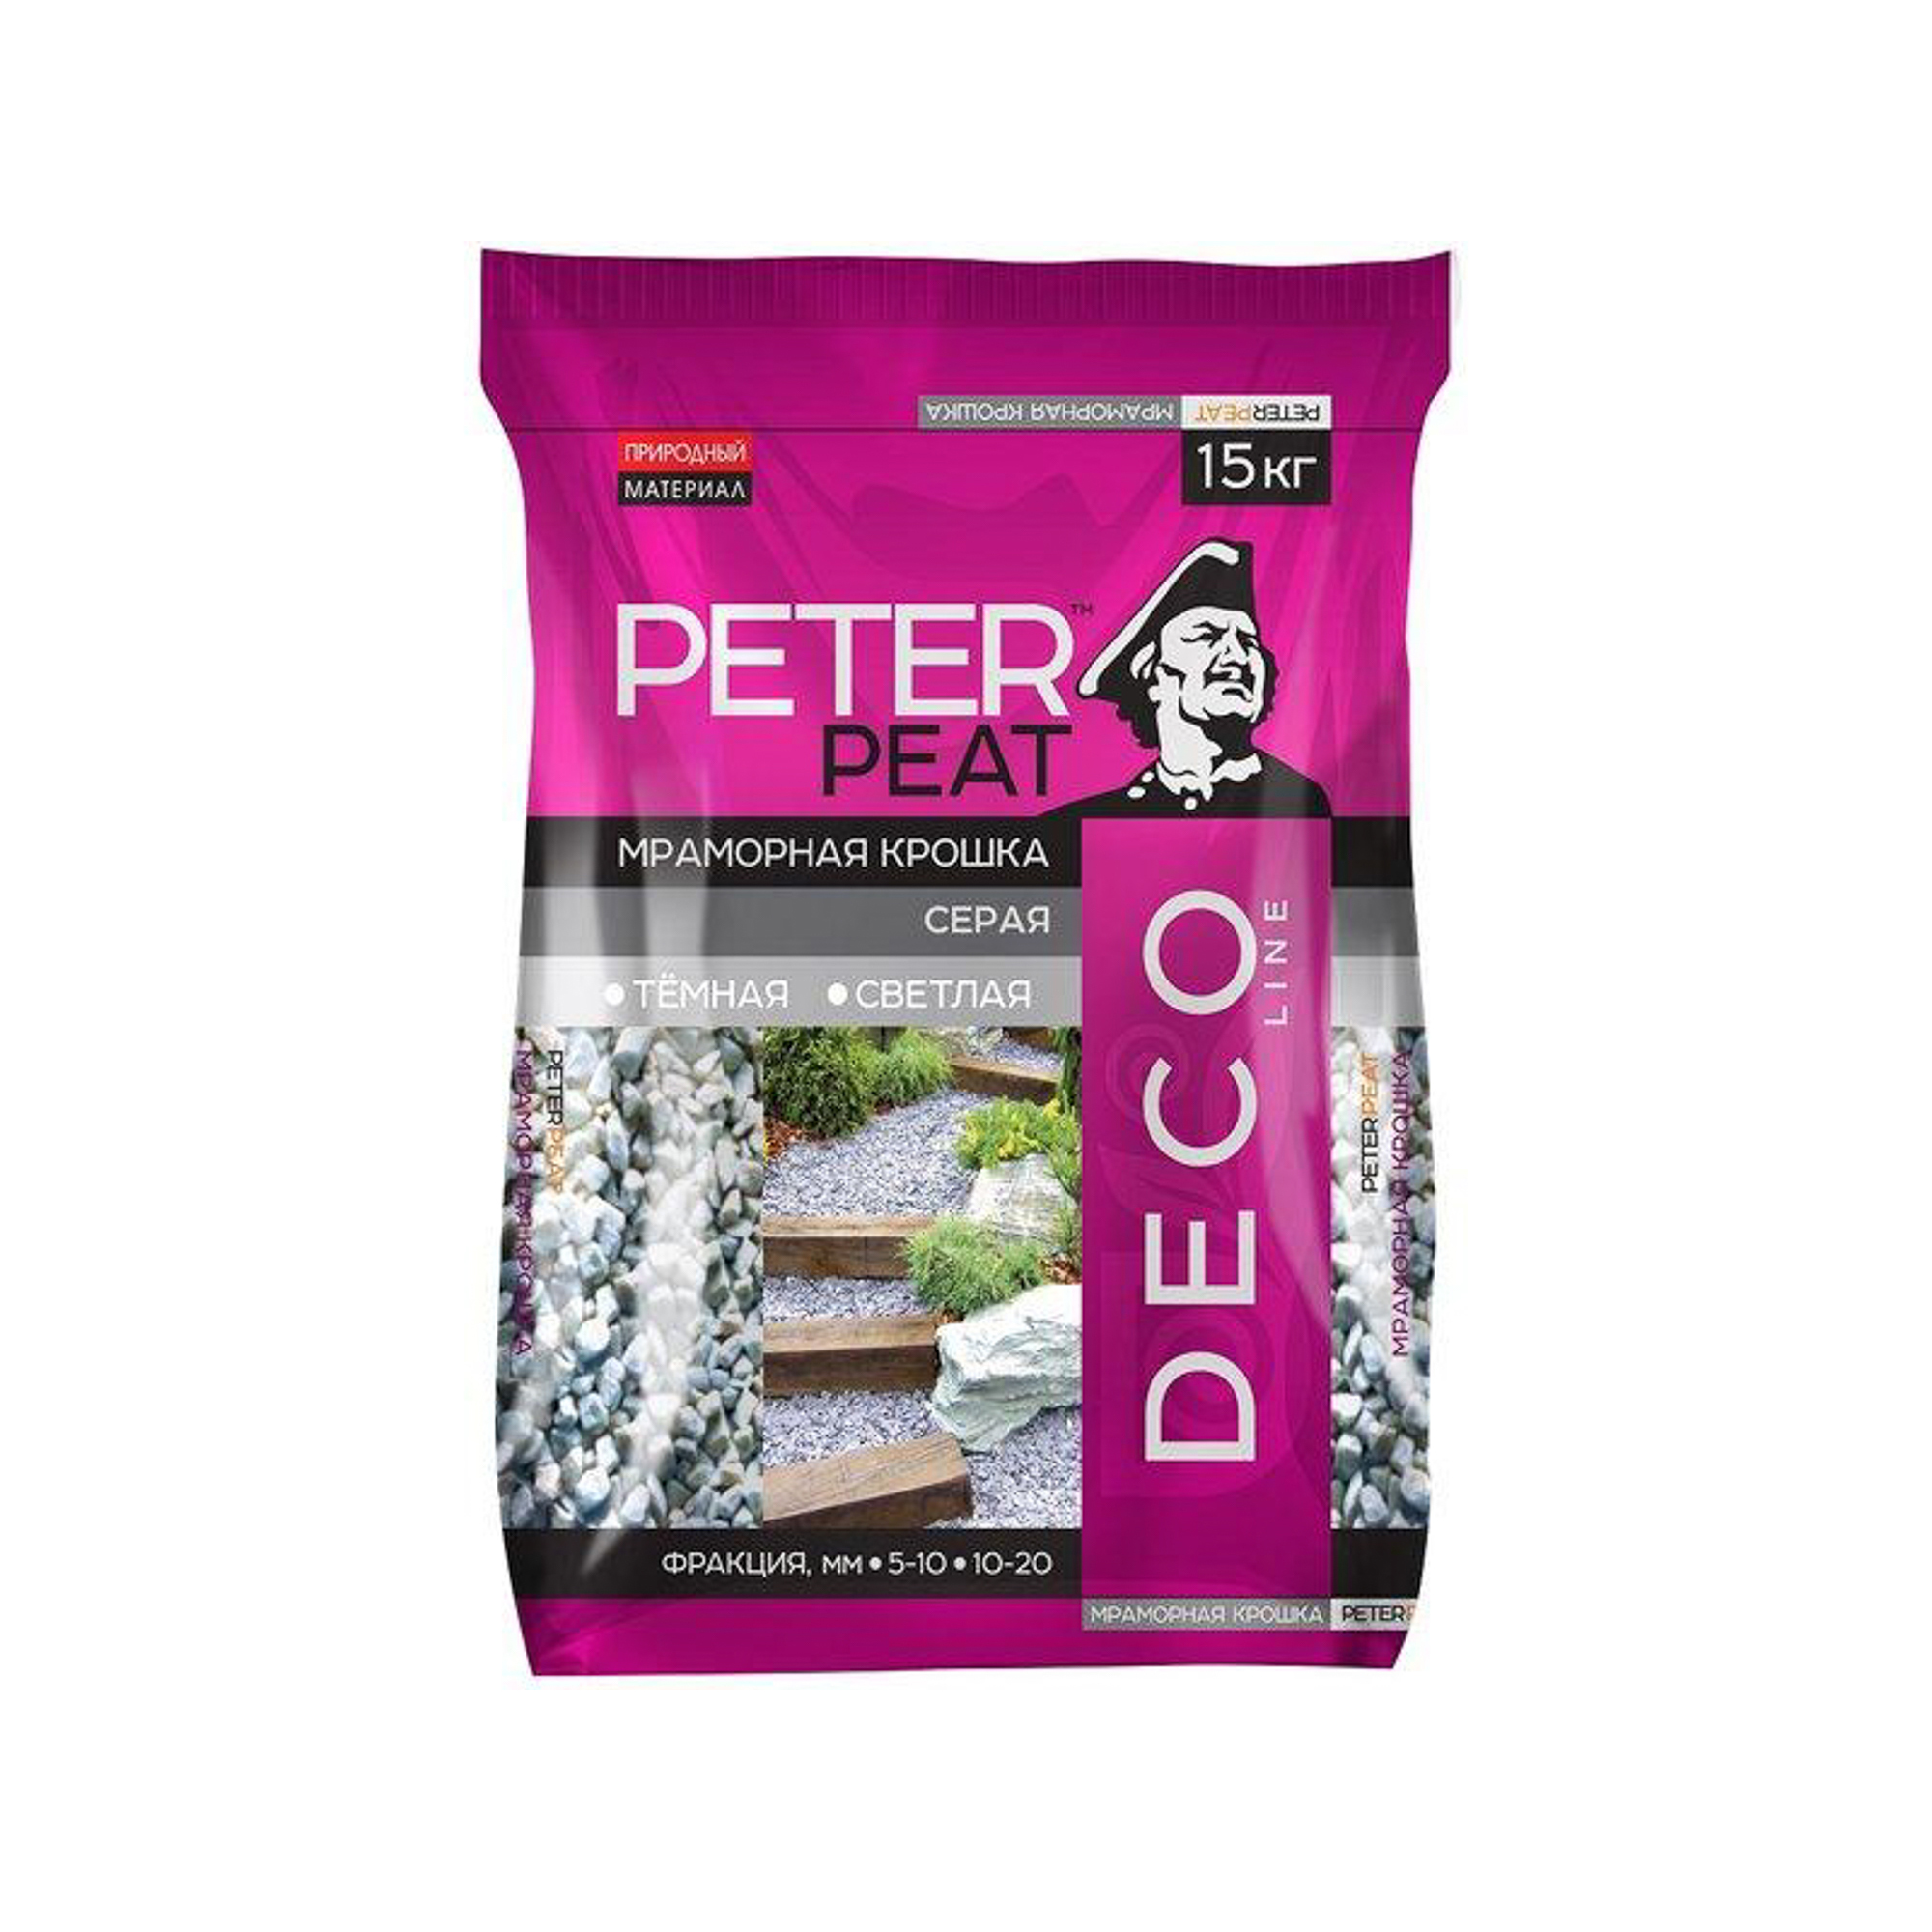 мраморная крошка peter peat светло серая фр 5 10 мм линия вита 15 кг Крошка мраморная светло-серая 15 кг 5-10 мм Peter Peat